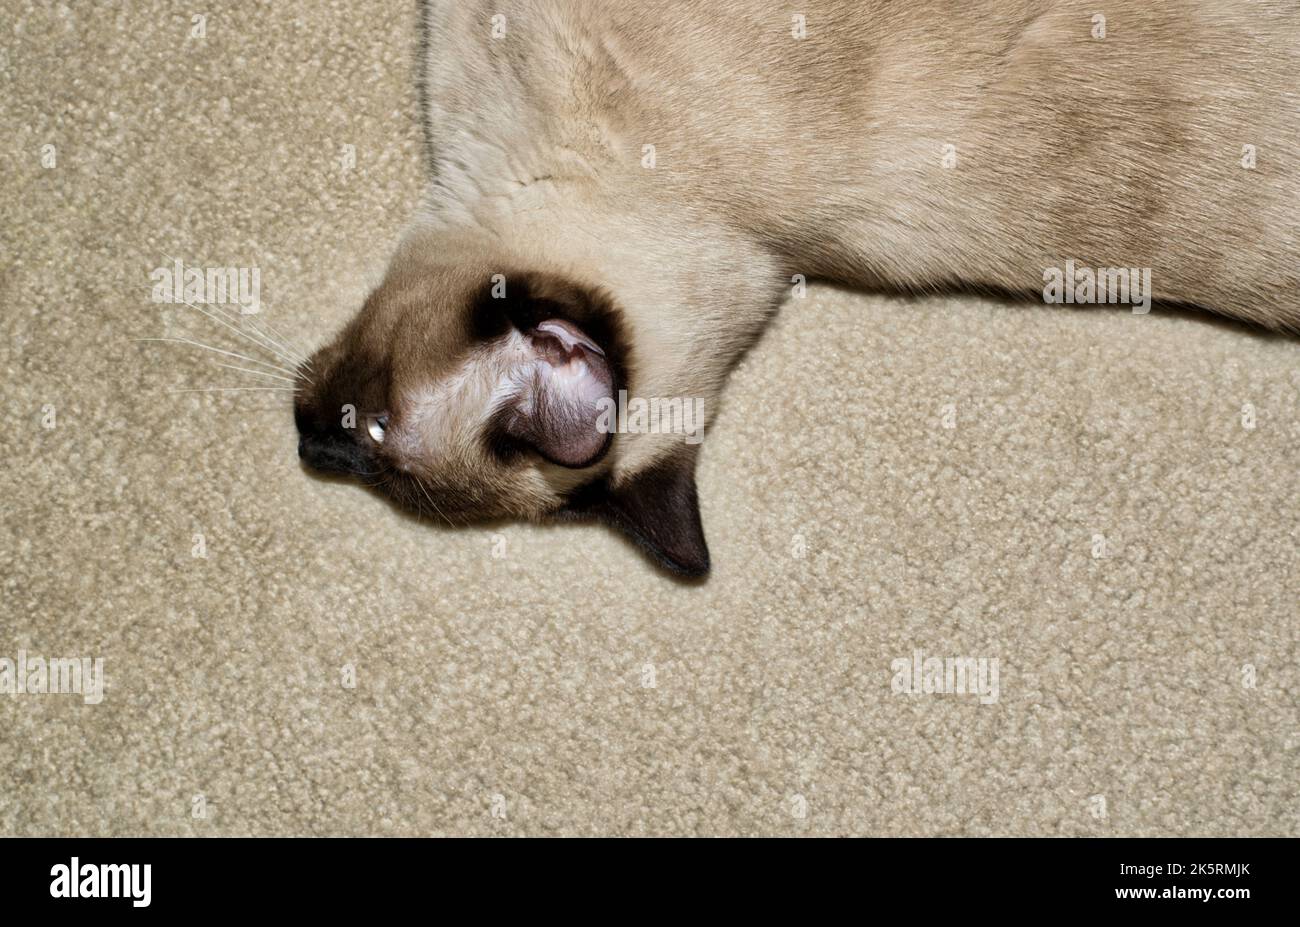 Siamesische Katze, die auf einem hellen Teppich auf der Seite liegt. Partielle Oberkörperansicht mit einzigartigem Blickpunkt und Kopierbereich. Stockfoto